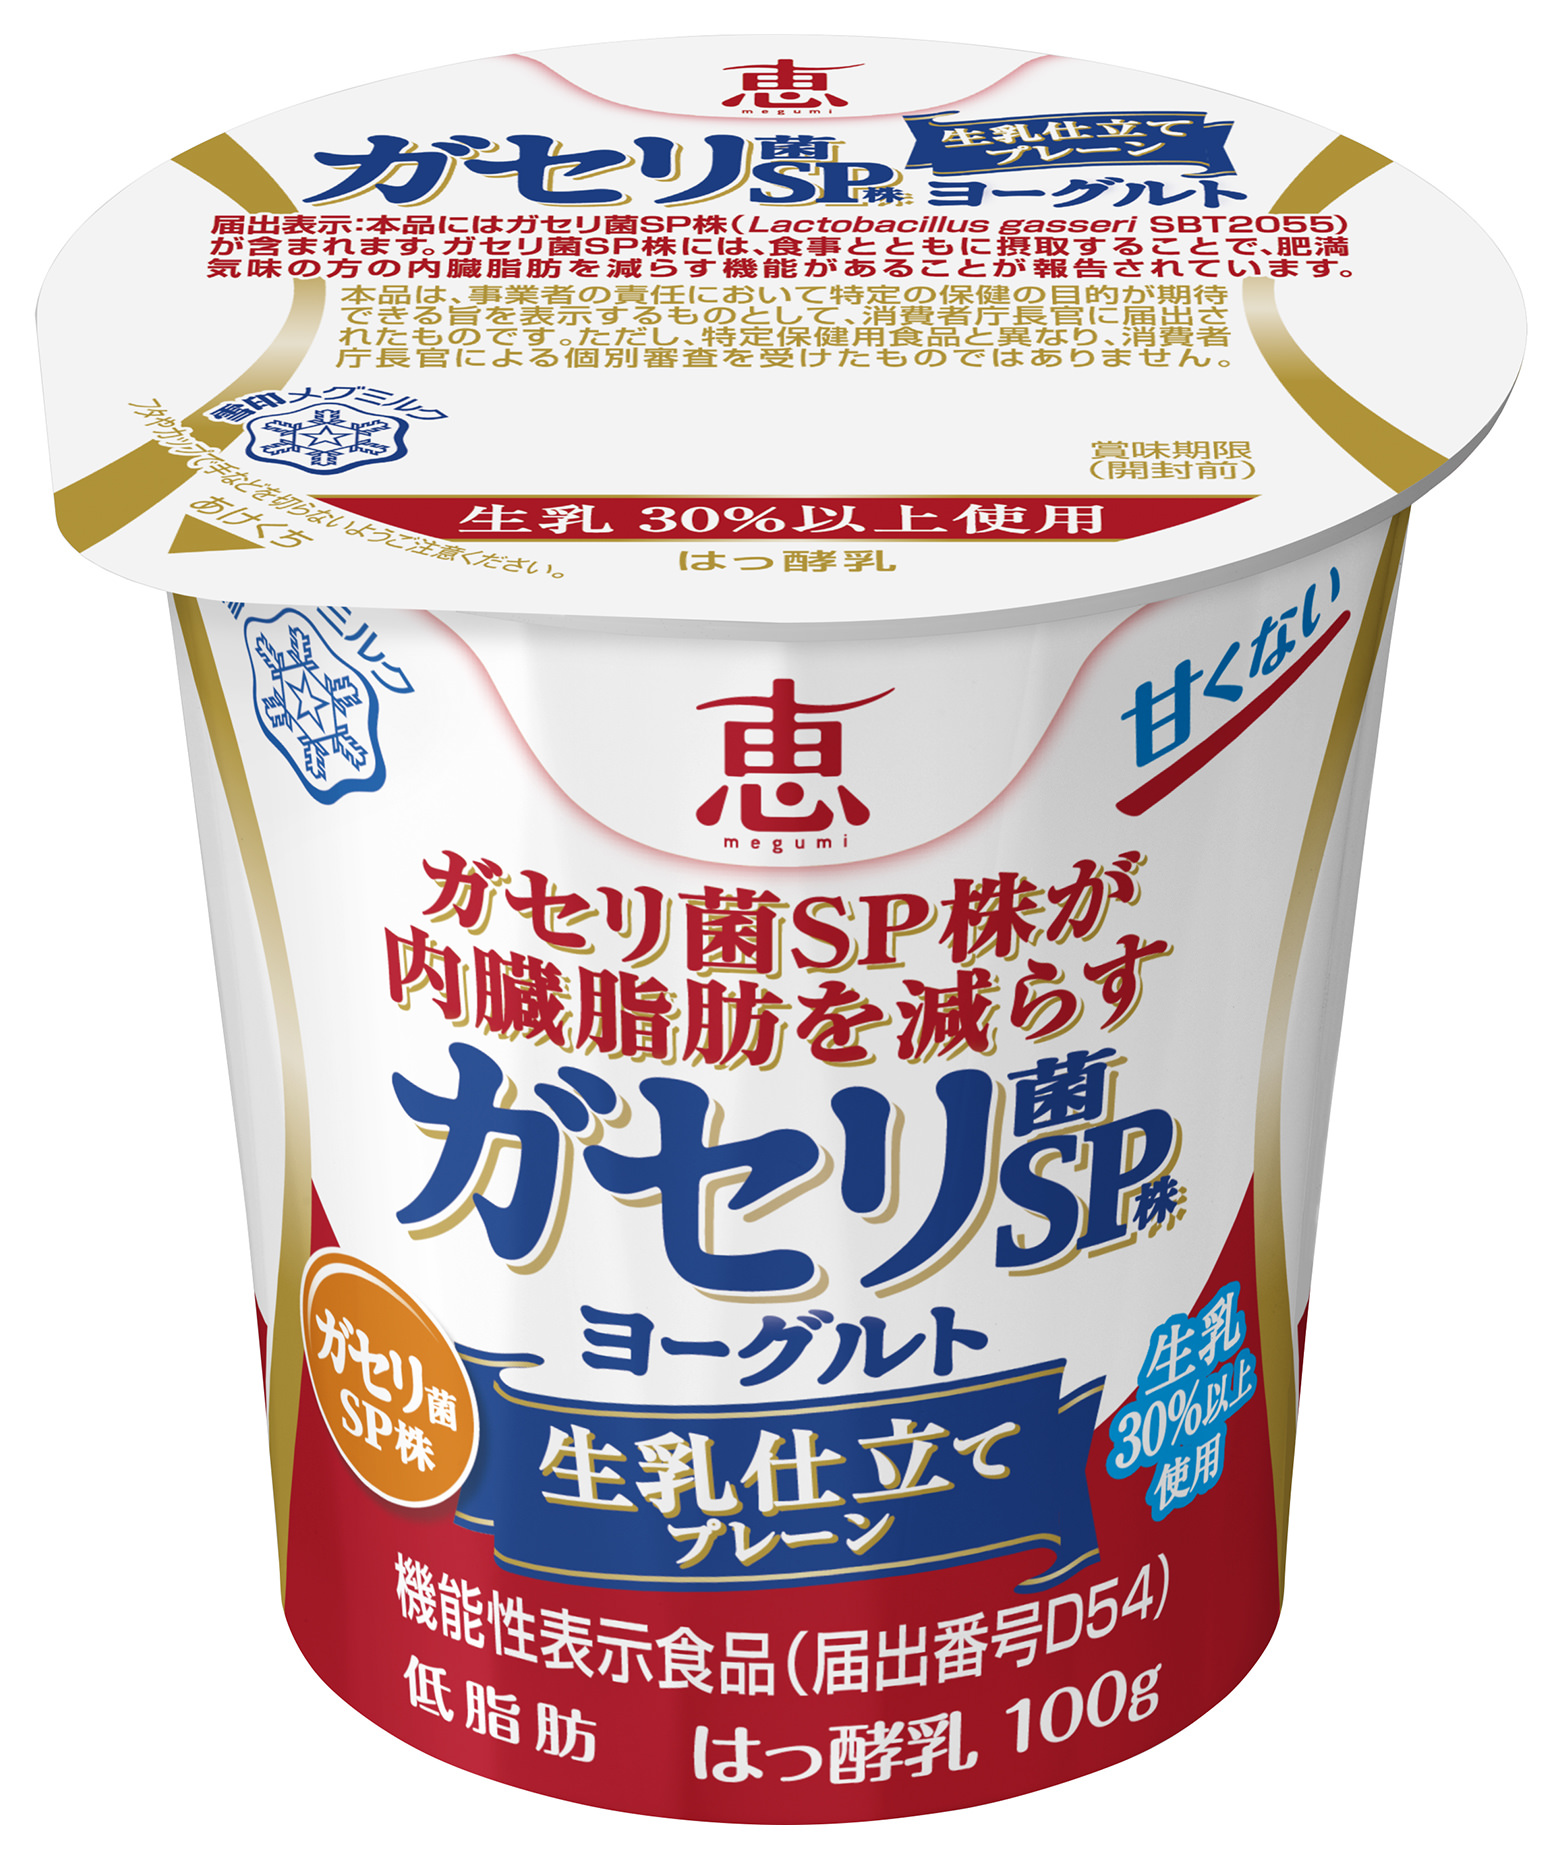 【雪印メグミルク】
『彩り食感　濃密抹茶プリン』　70g×4

2019年3月5日（火）より全国にて発売